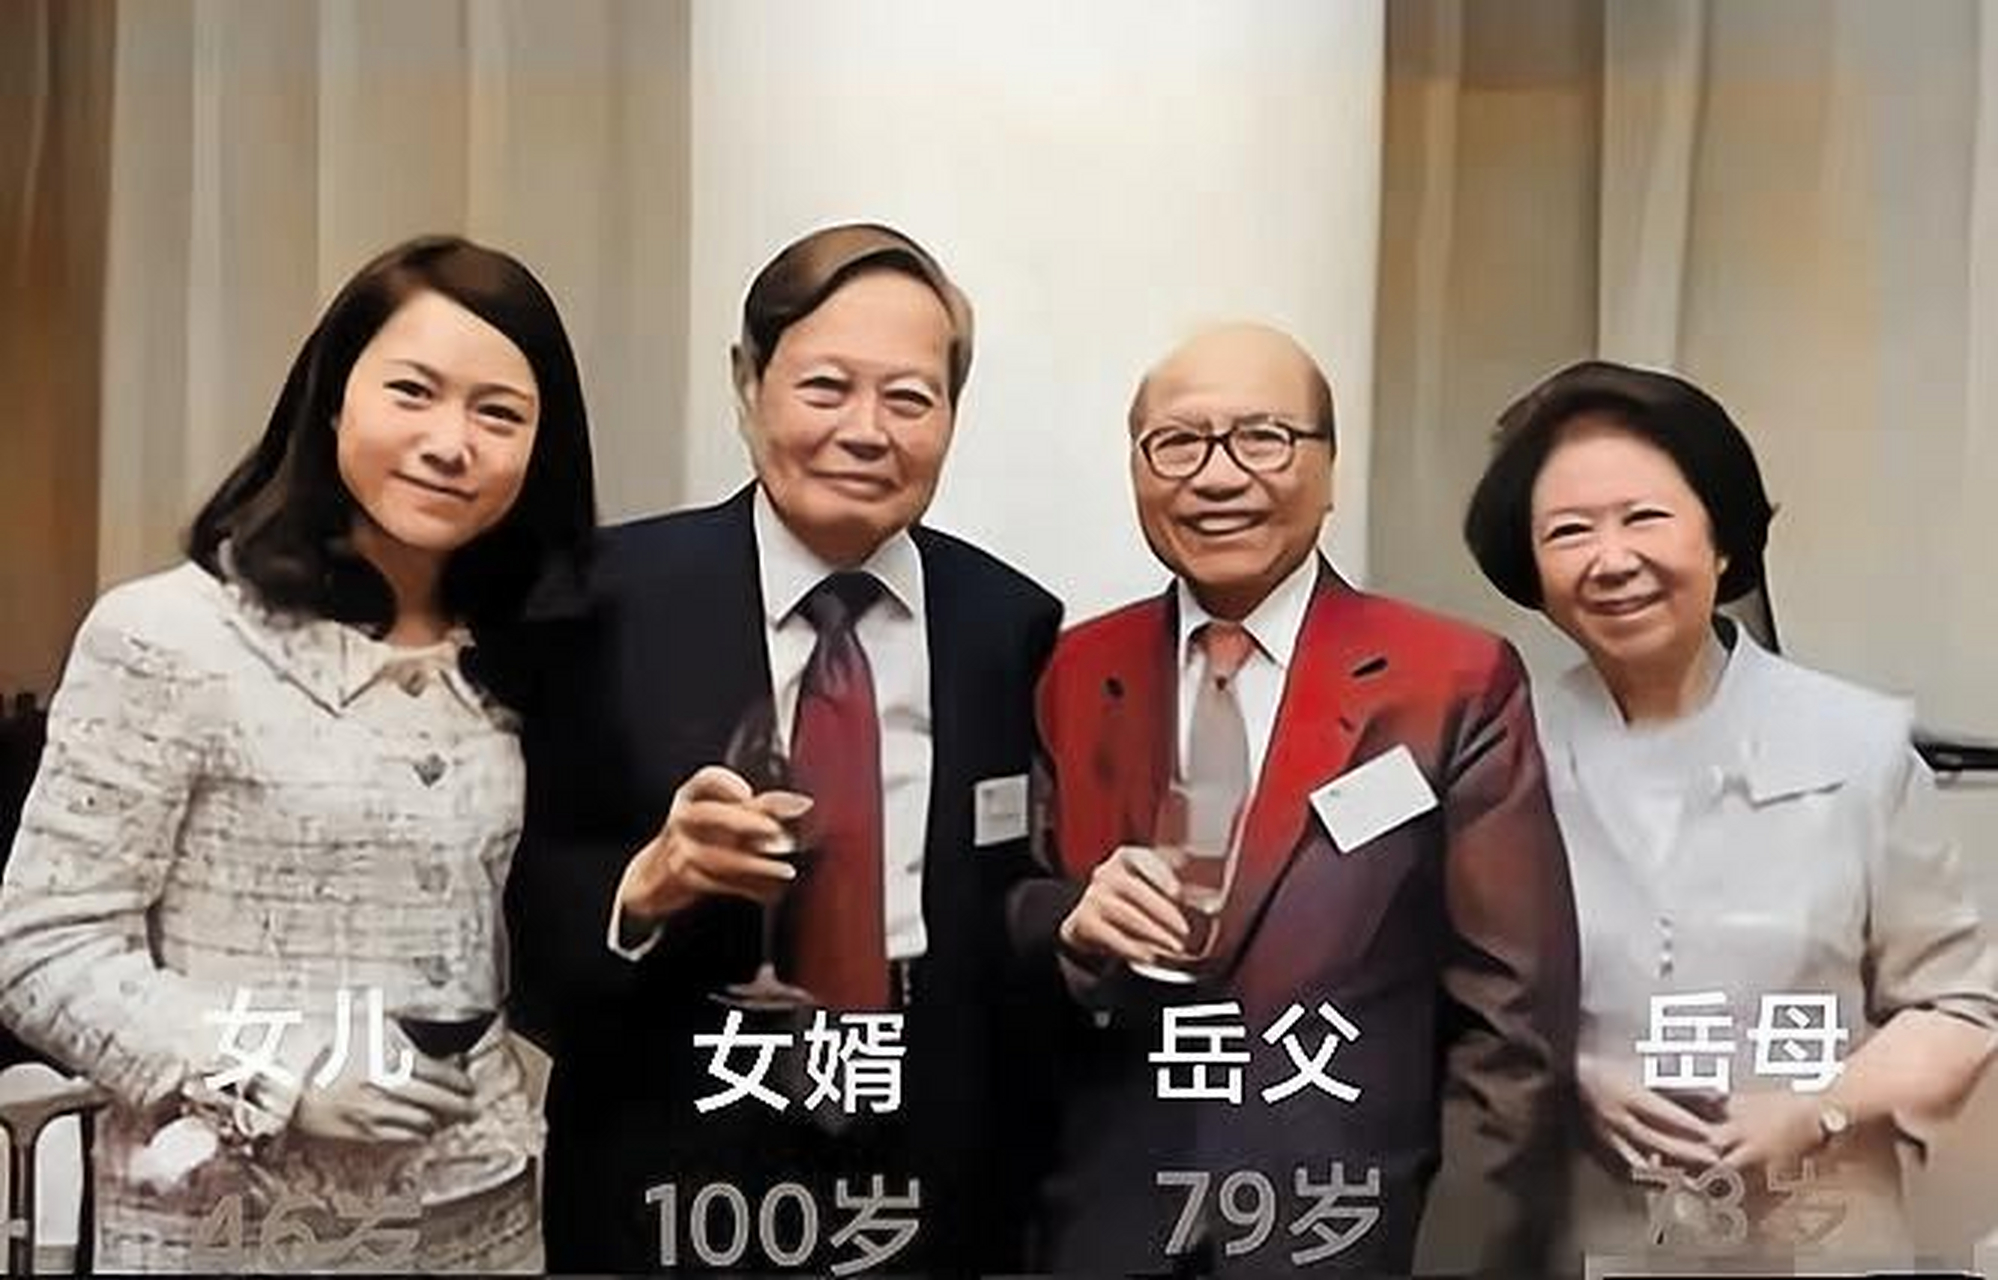 一张拍摄于2022年的杨振宁与翁帆父母的合影,照片显示杨振宁已是百岁